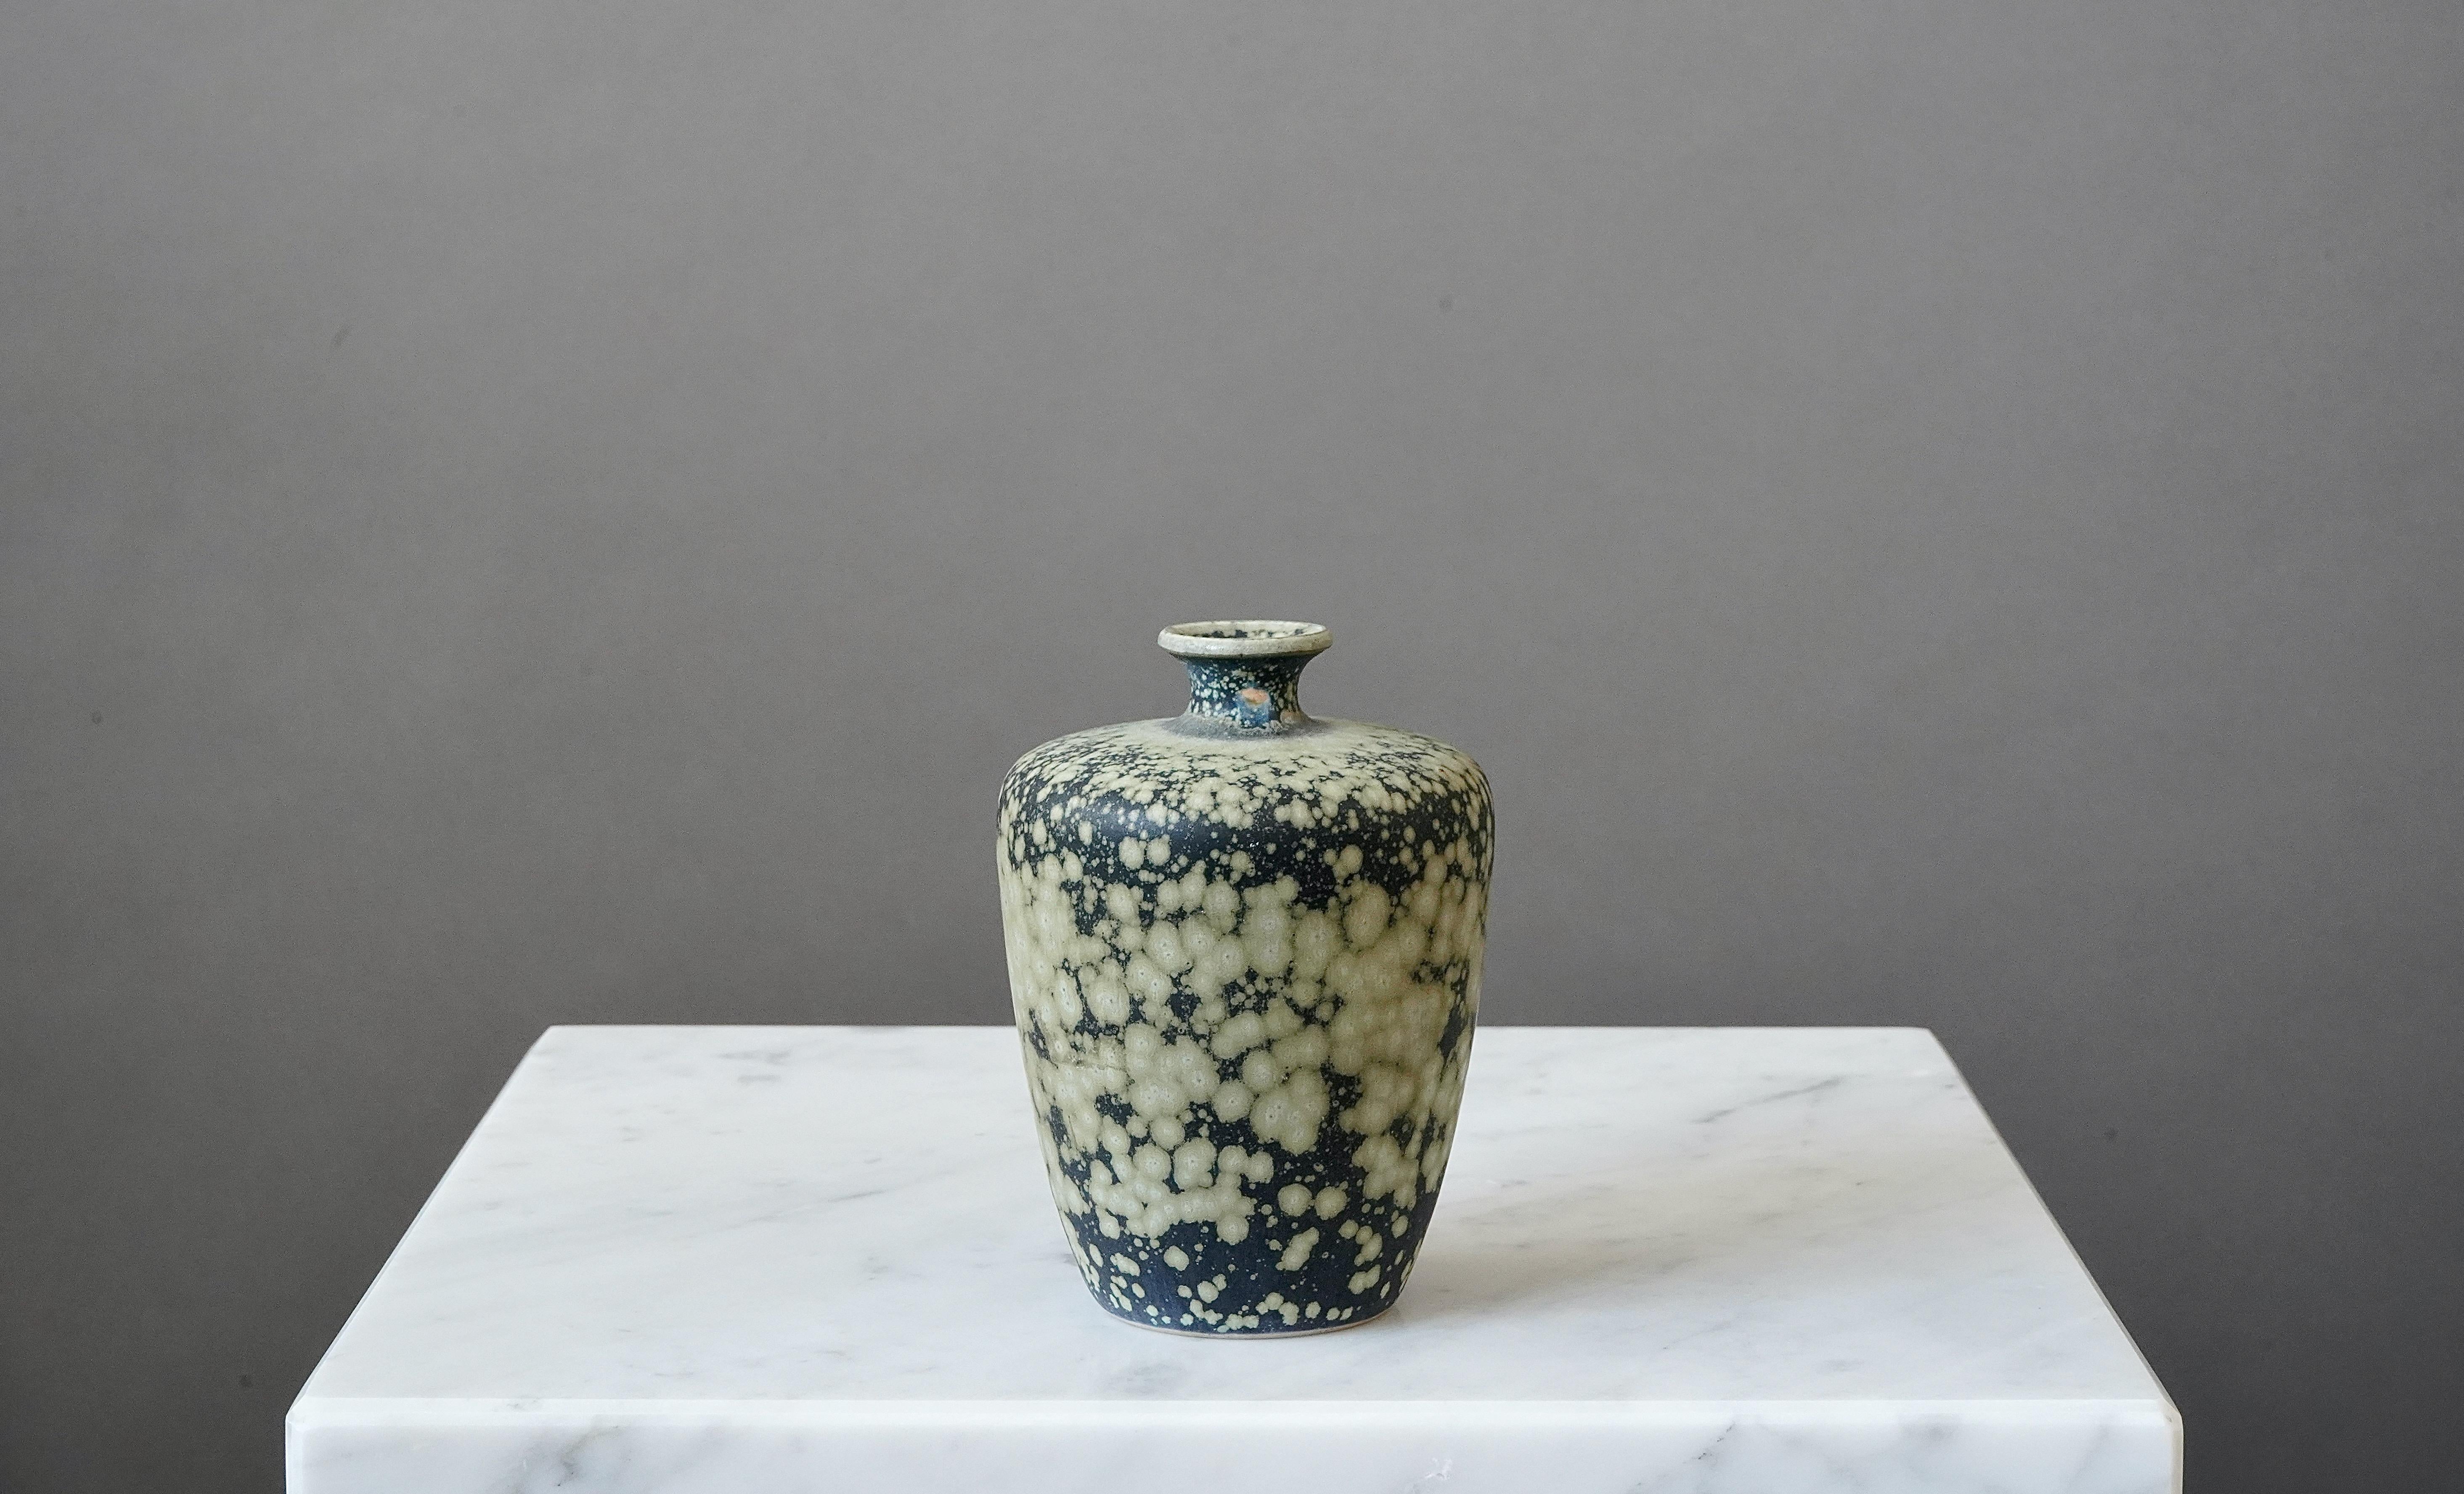 Un magnifique petit vase en grès avec une glaçure étonnante. 
Réalisé par Rolf Palm, dans l'atelier de l'artiste, Mölle, Suède, 1980.

Incisé 